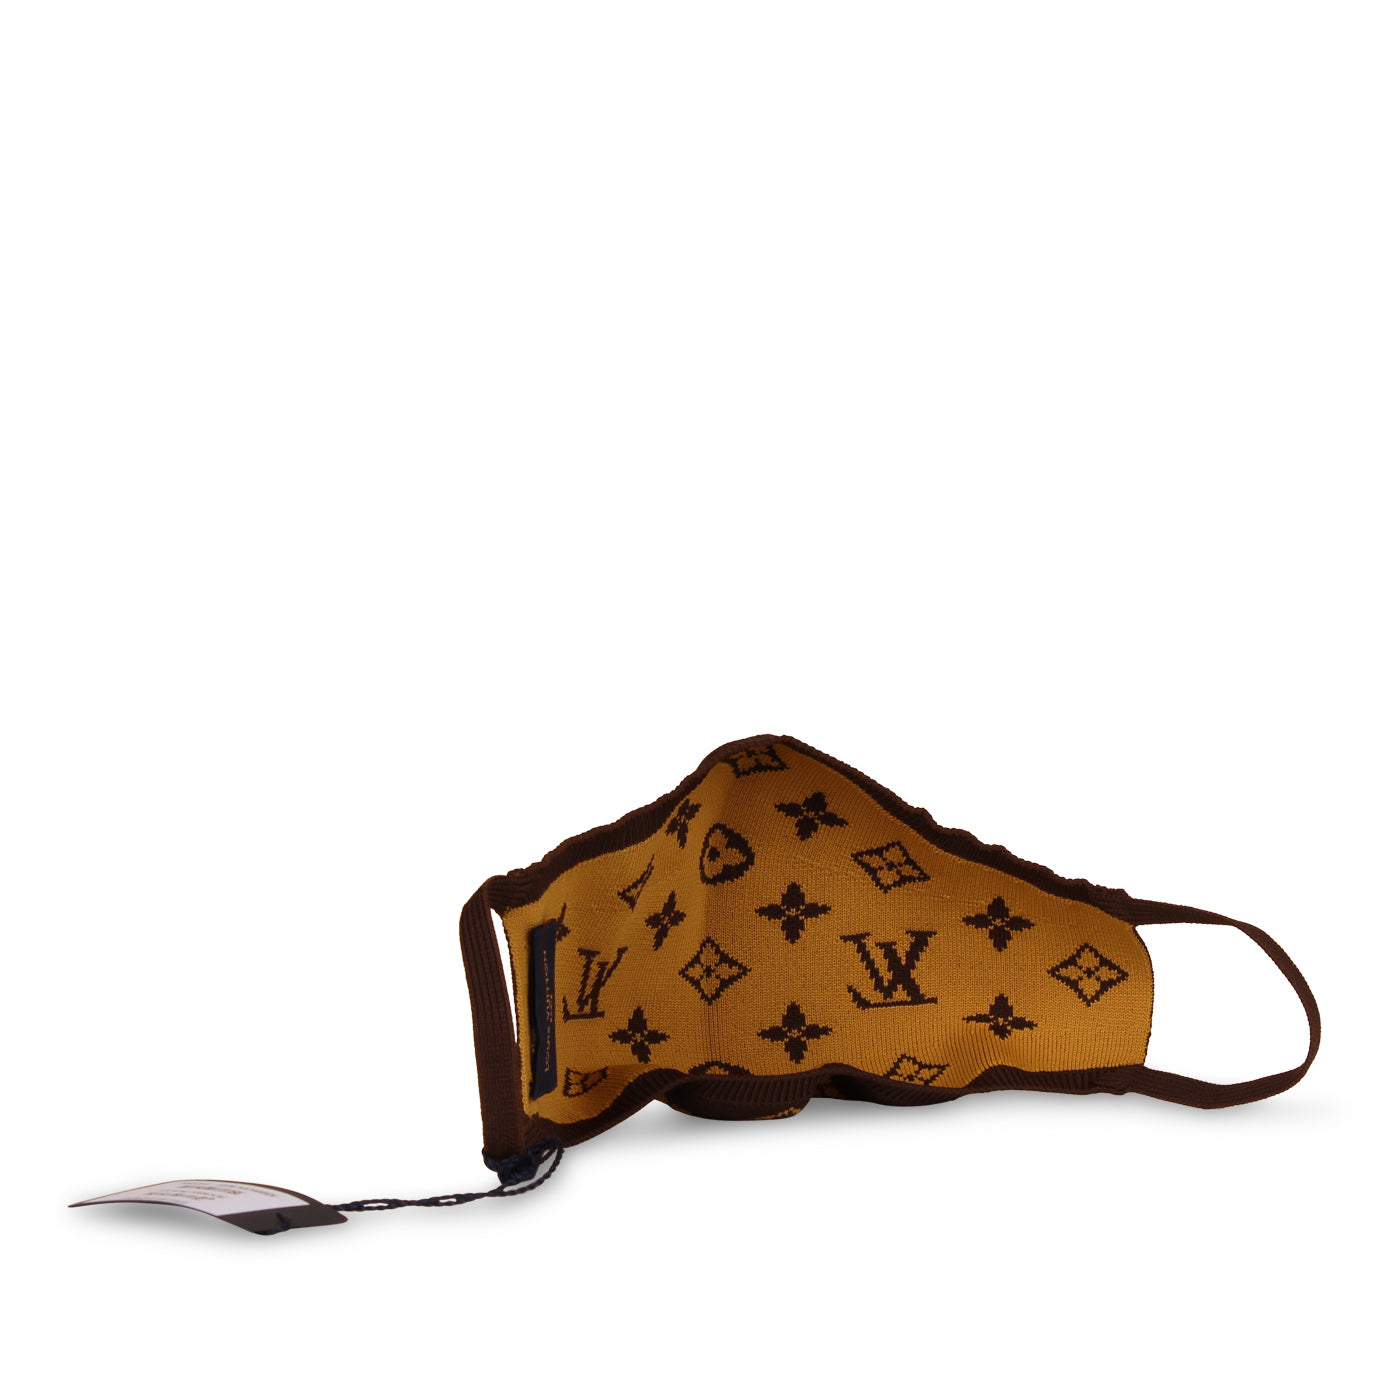 Louis Vuitton, Accessories, Louis Vuitton Knit Face Mask